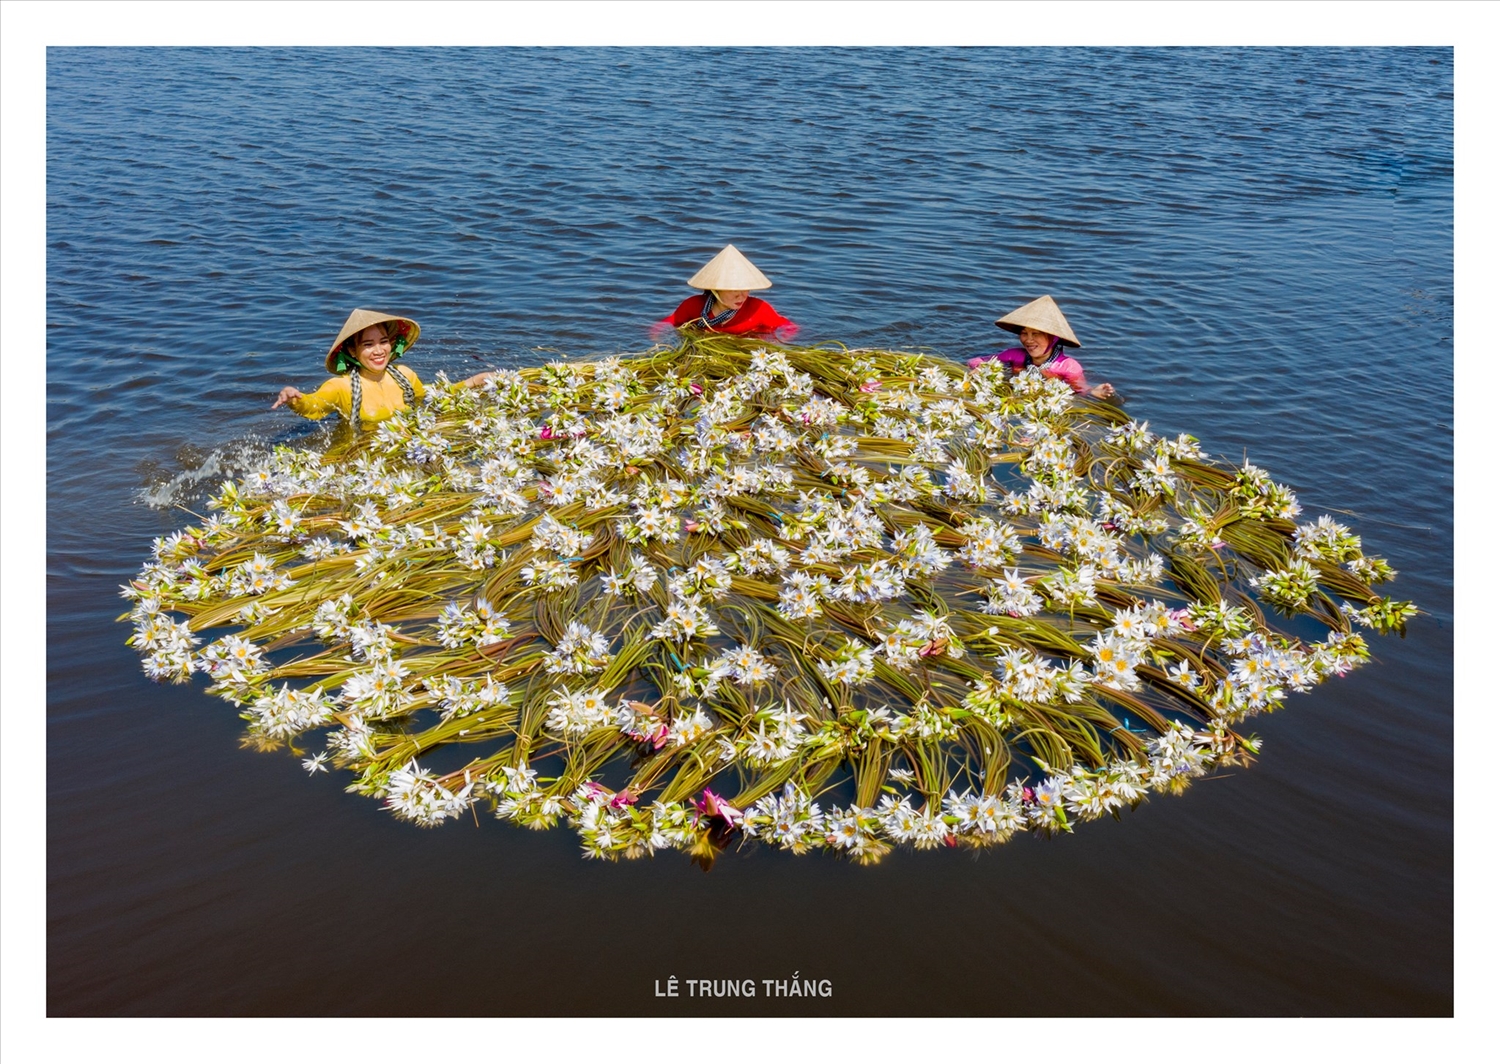 Nội dung ảnh dự thi phản ánh cuộc sống, con người, văn hóa, phong cảnh, thiên nhiên, công cuộc xây dựng và bảo vệ Tổ quốc Việt Nam (ảnh: Lê Trung Thắng).